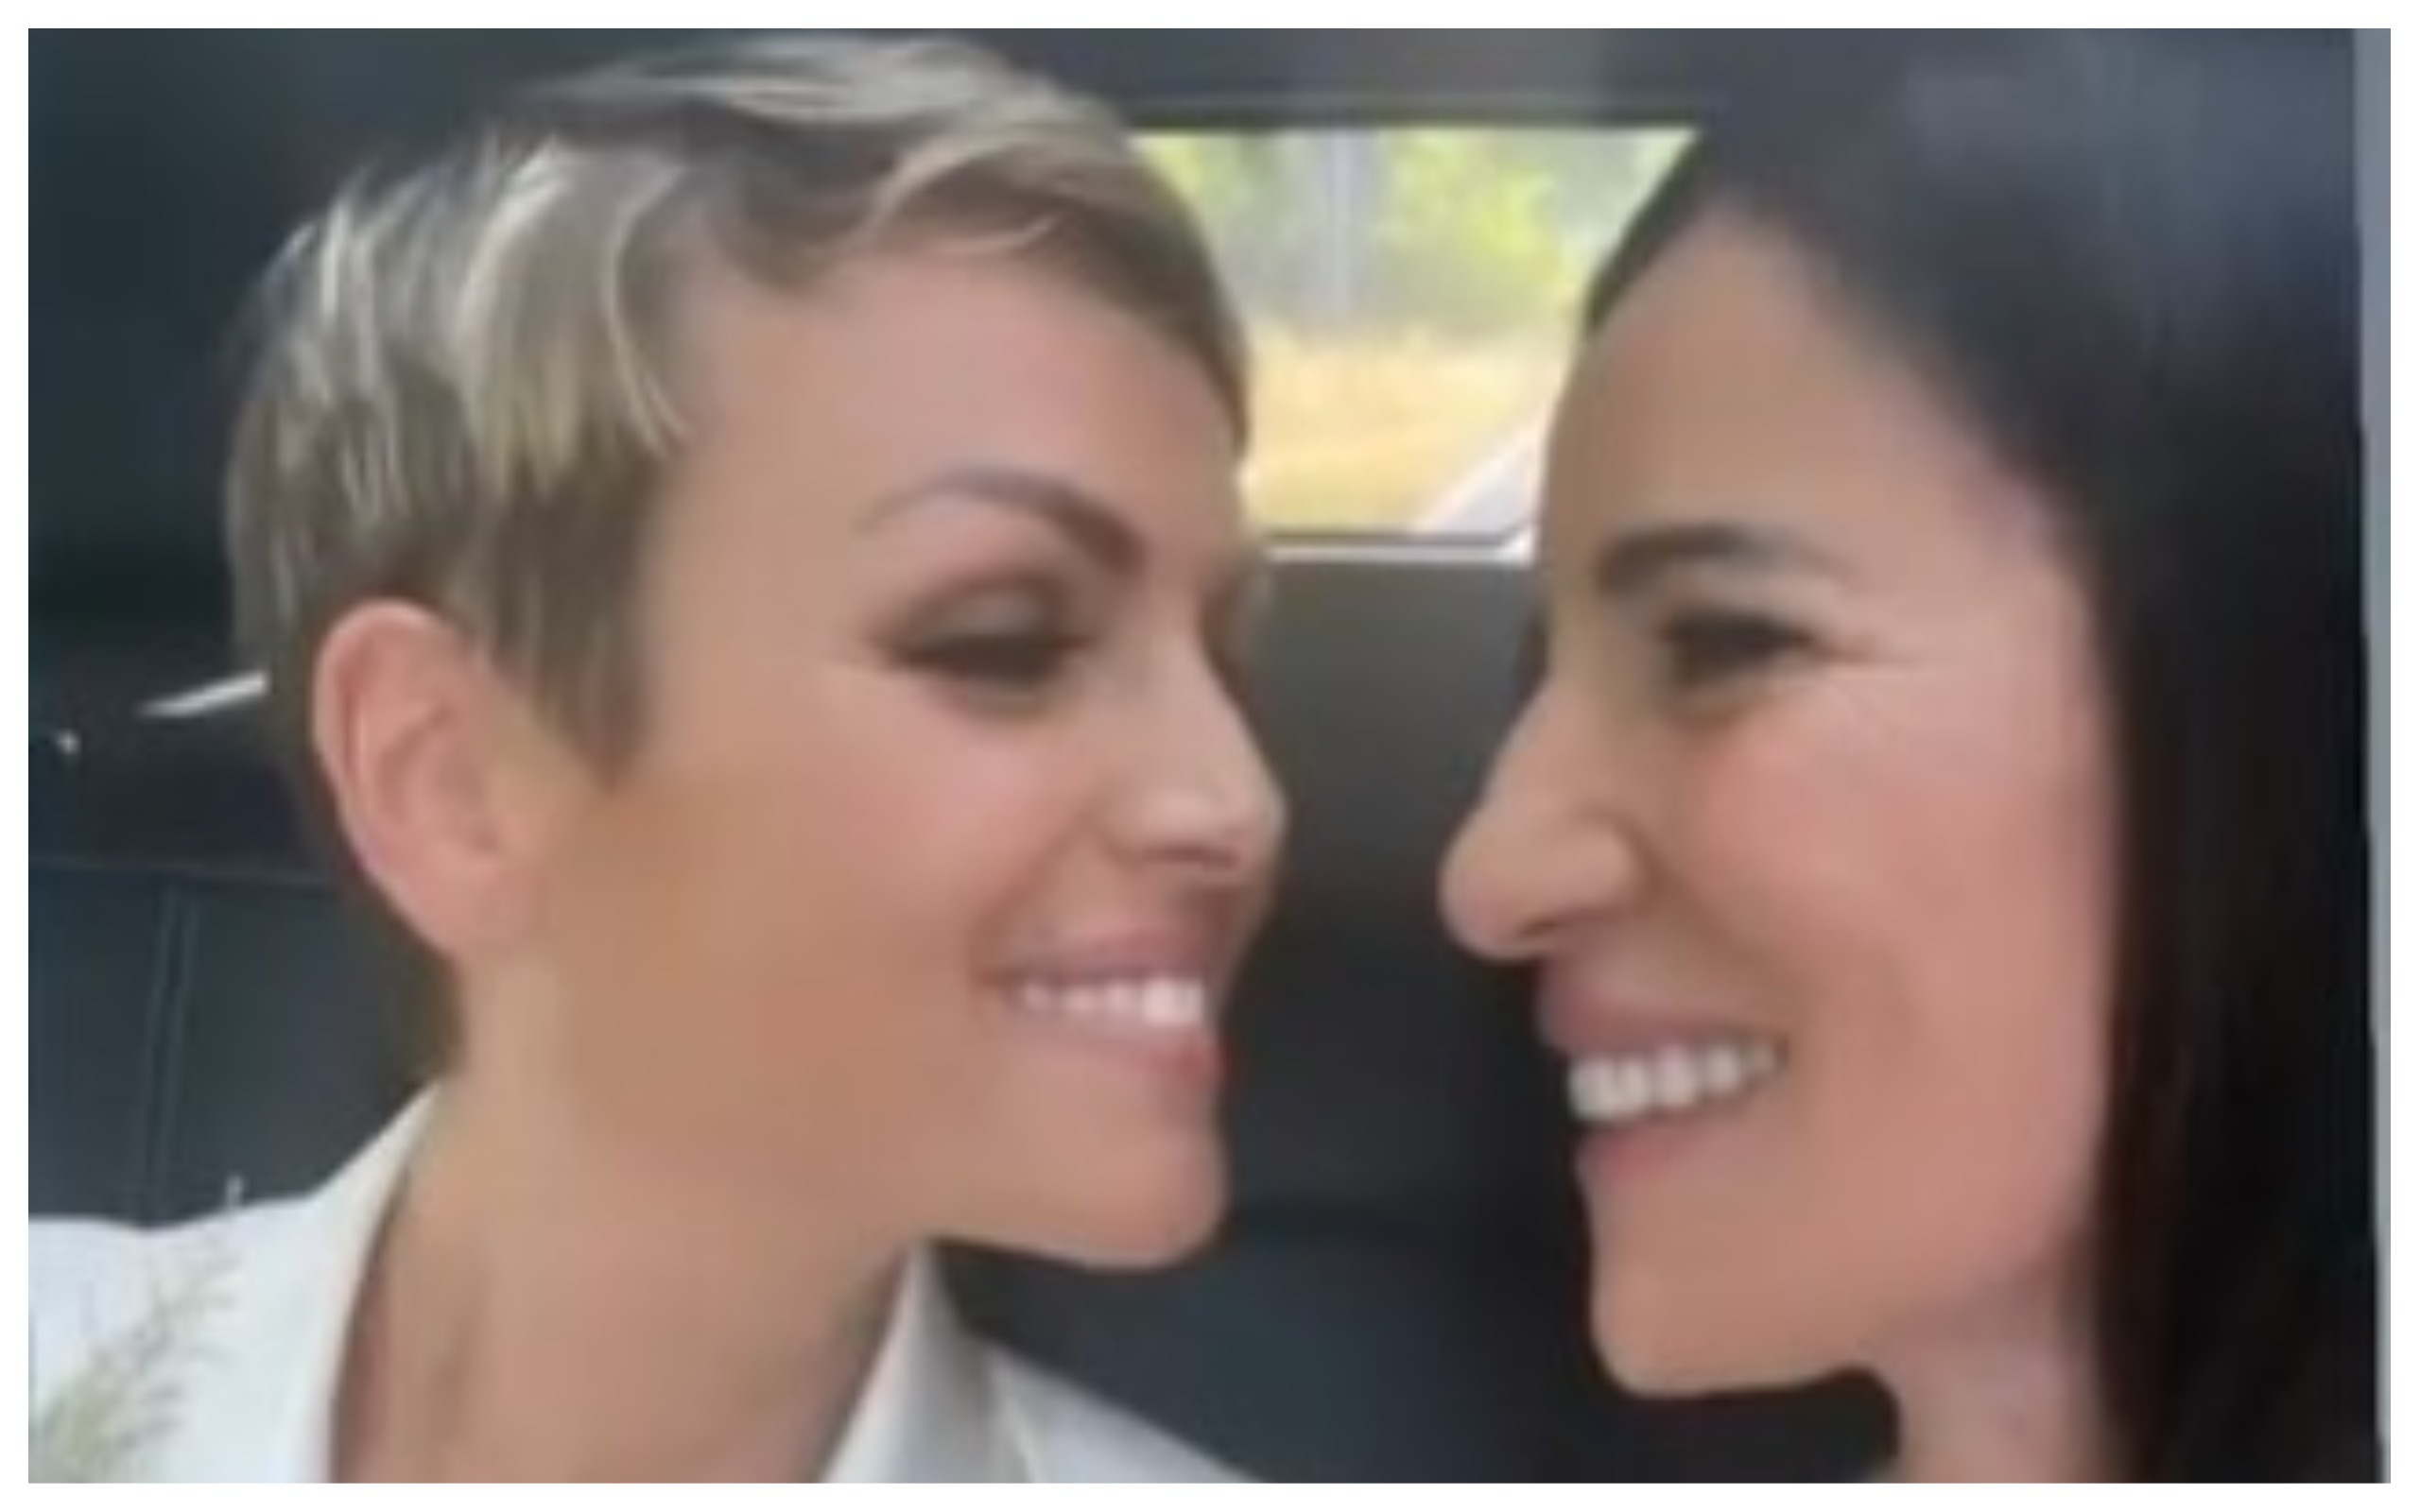 “Abbiamo detto sì”, Francesca Pascale e Paola Turci spose: la prima foto social